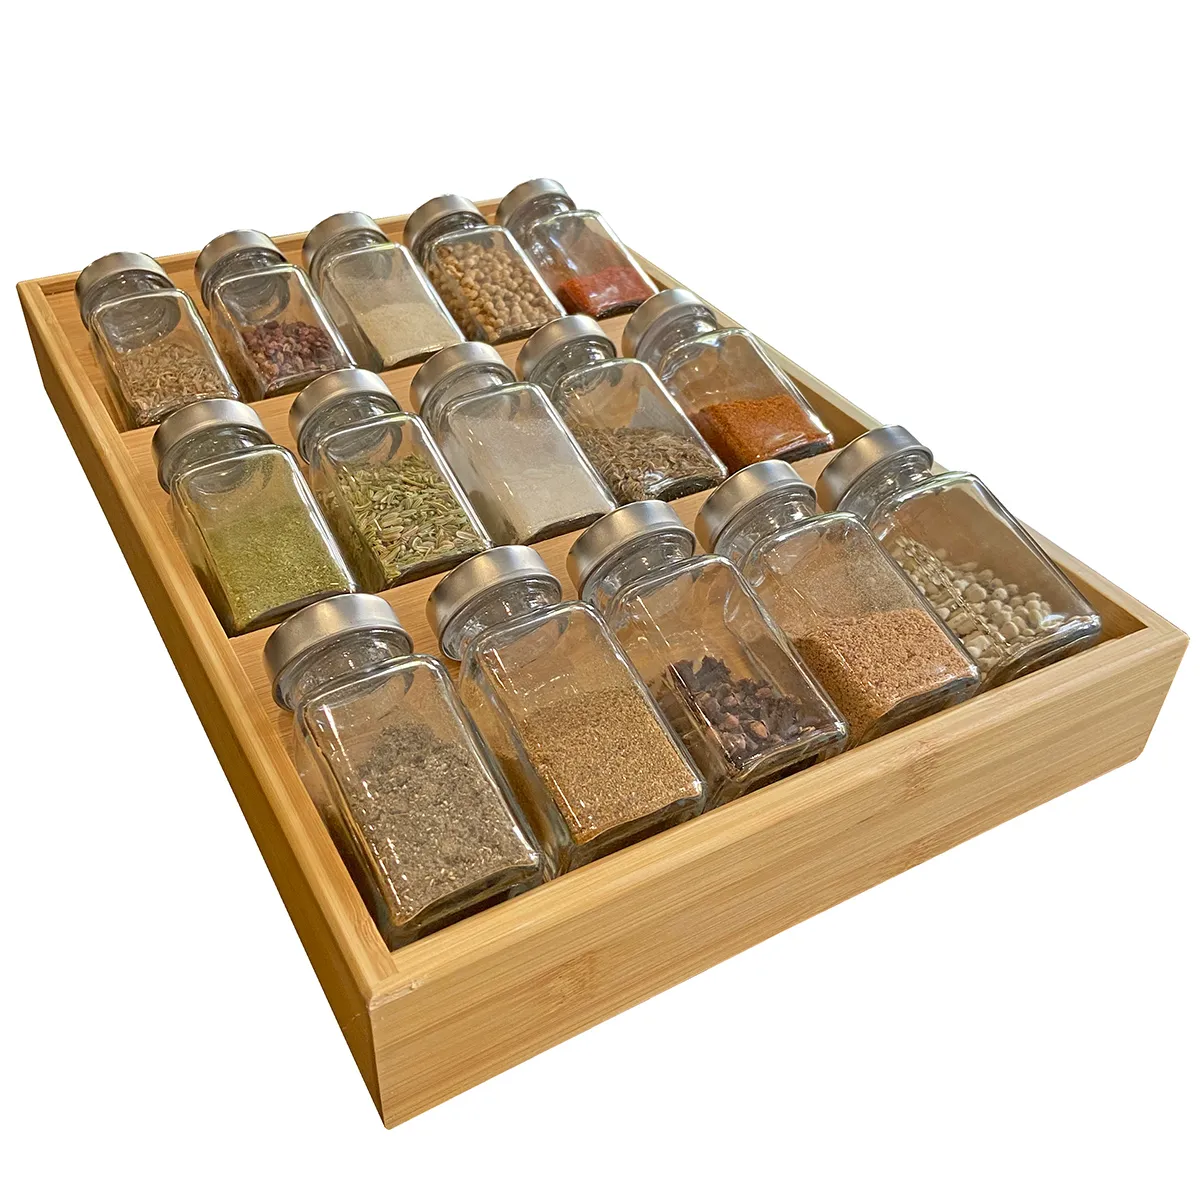 Bamboe Spice Rack In-Lade Keukenkast Spice 15 Fles Houder Dienblad voor opslag / Organizer 3-Tier Insert